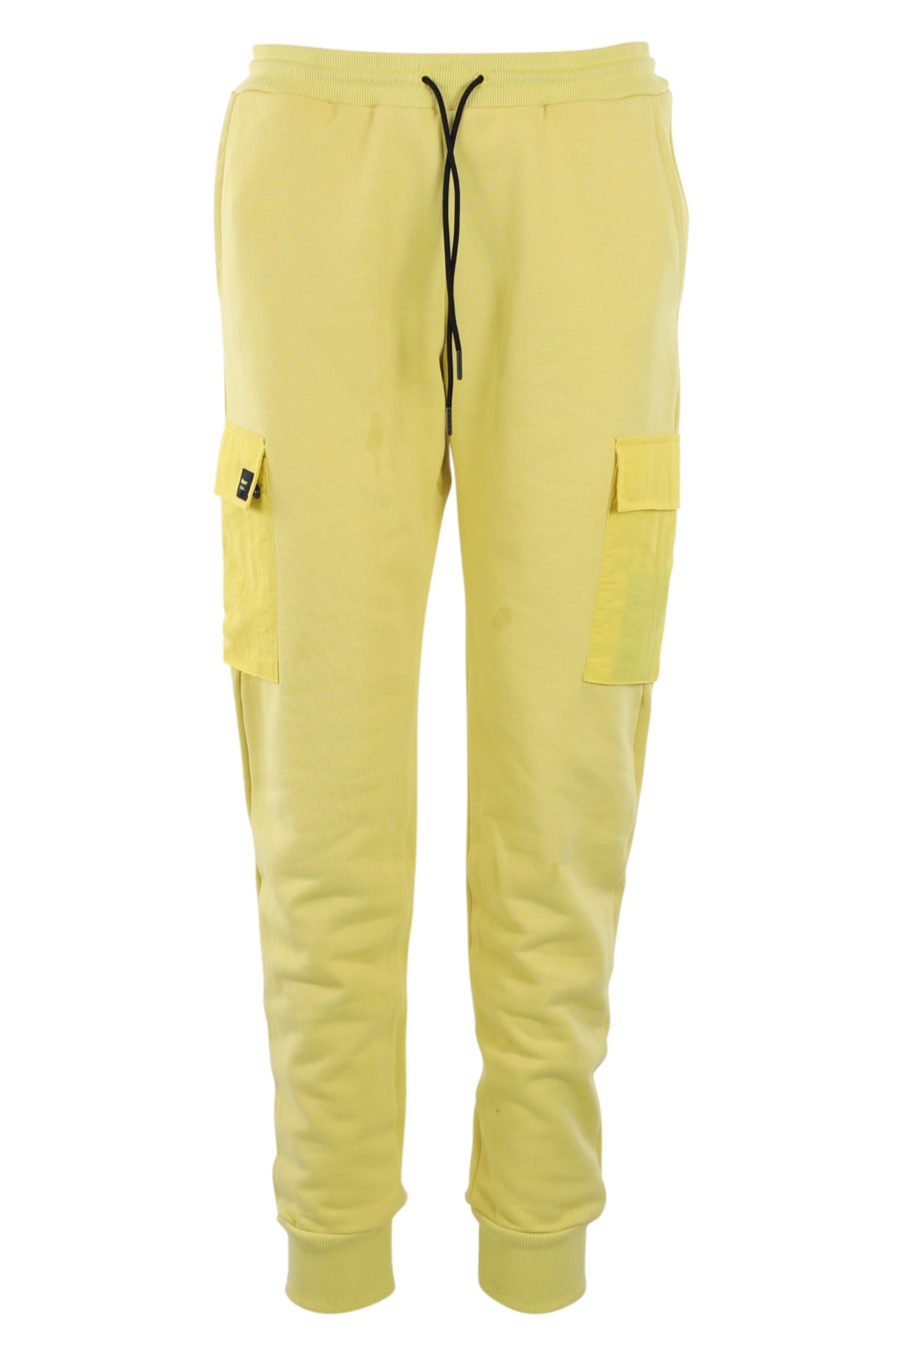 Bas de survêtement jaune avec poches - IMG 0903